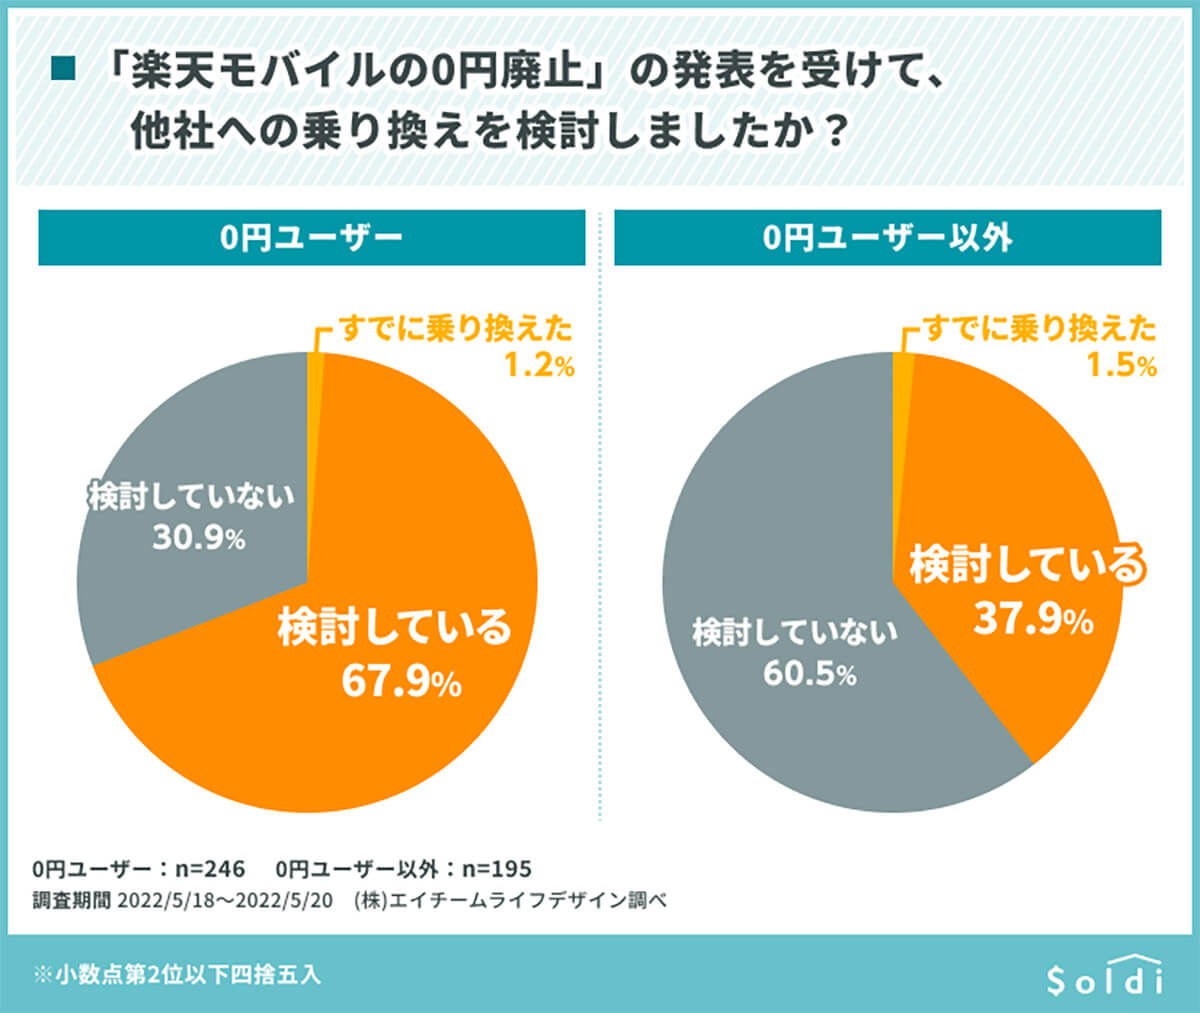 楽天モバイルの0円廃止発表を受けて0円ユーザーの約7割、0円ユーザー以外の約4割が乗り換えを検討している